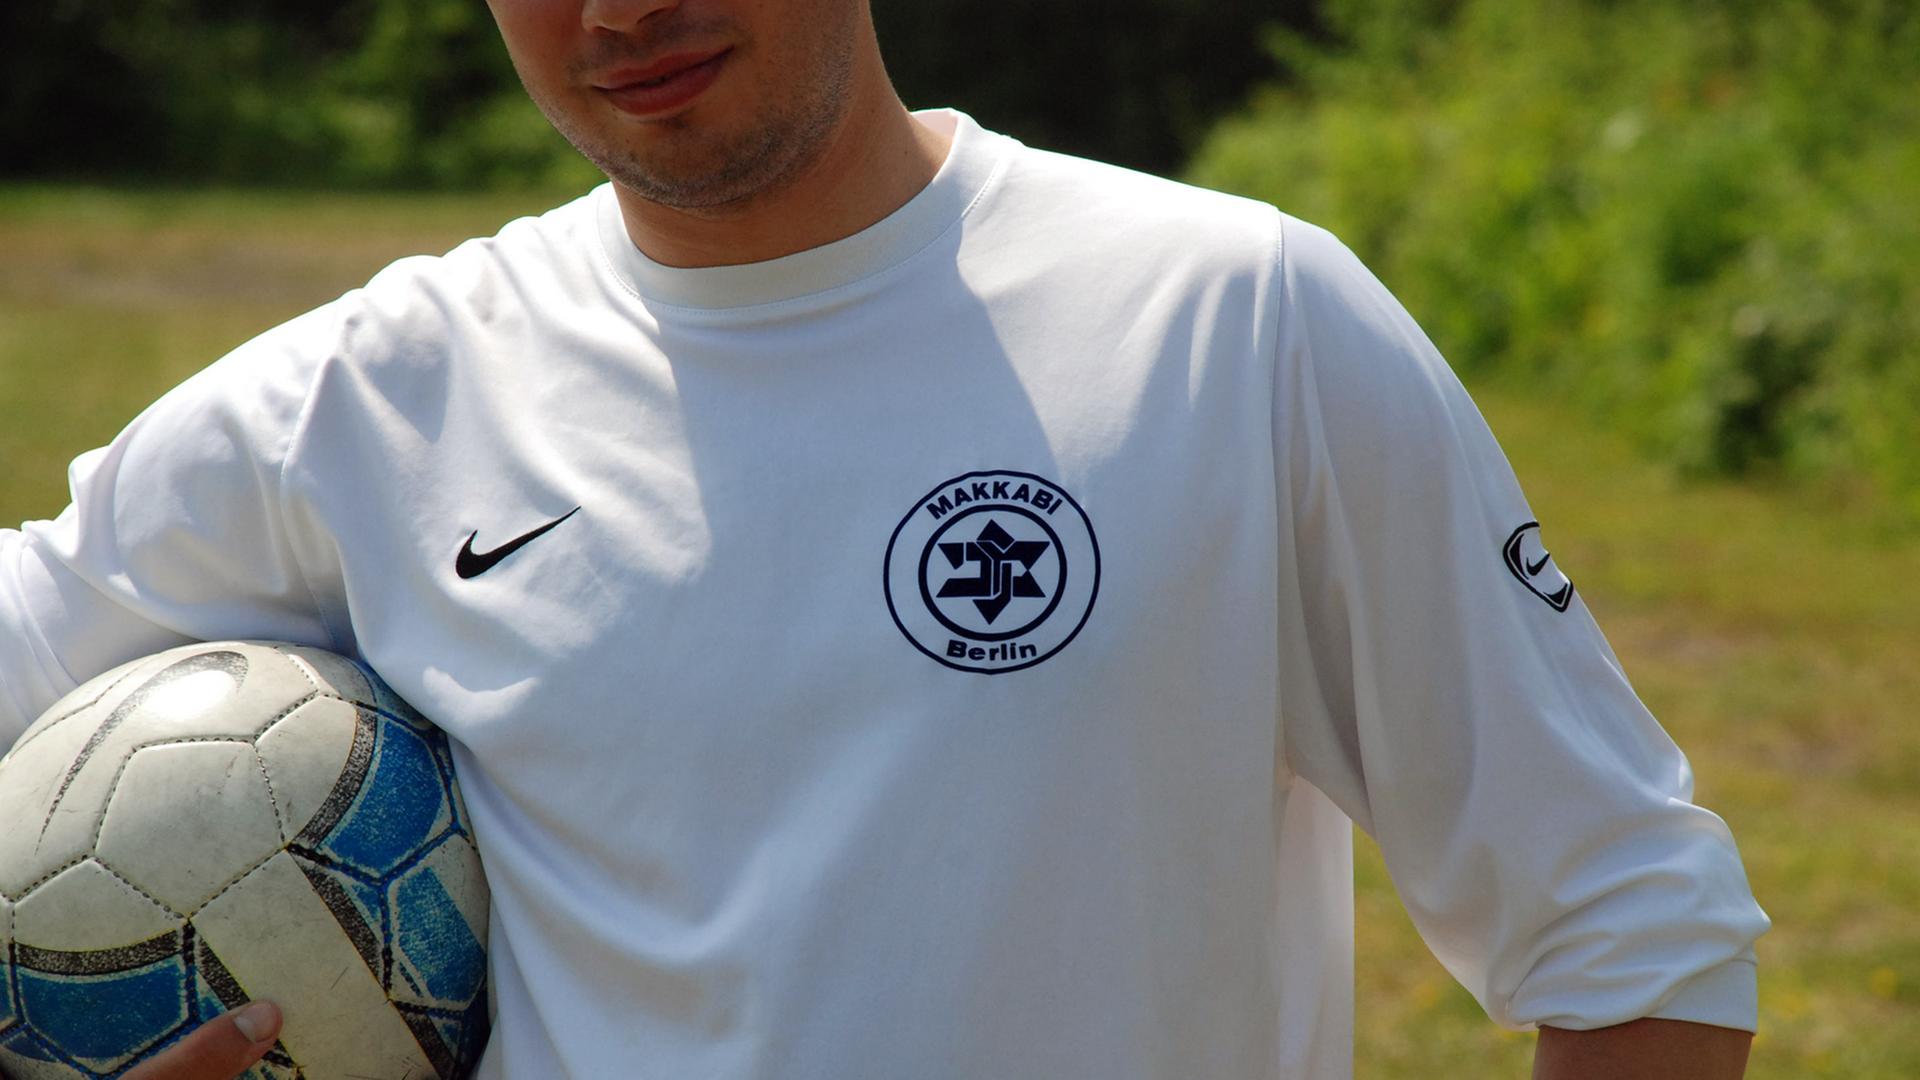 Ein Spieler von TuS Makkabi Berlin steht auf dem Spielfeld und hält den Ball unter dem Arm. Die Weiß-Blauen tragen auf ihrem Trikot einen verfremdeten Davidstern als Vereinswappen. (aufgenommen 2008)